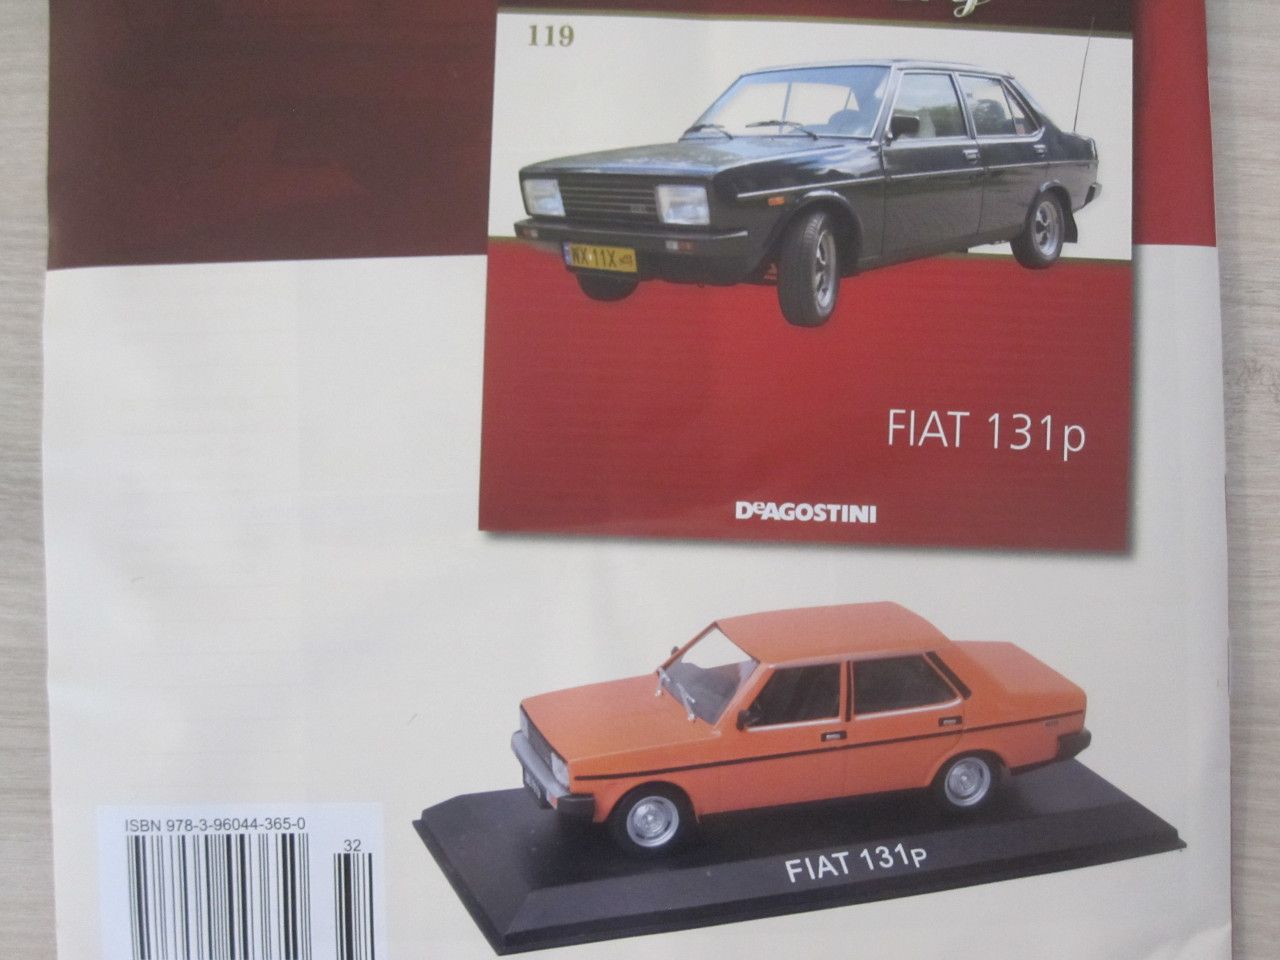 Legendrky . 119 - Fiat 131P (dal vozidlo, kter u ns bn jezdilo... :-) ).